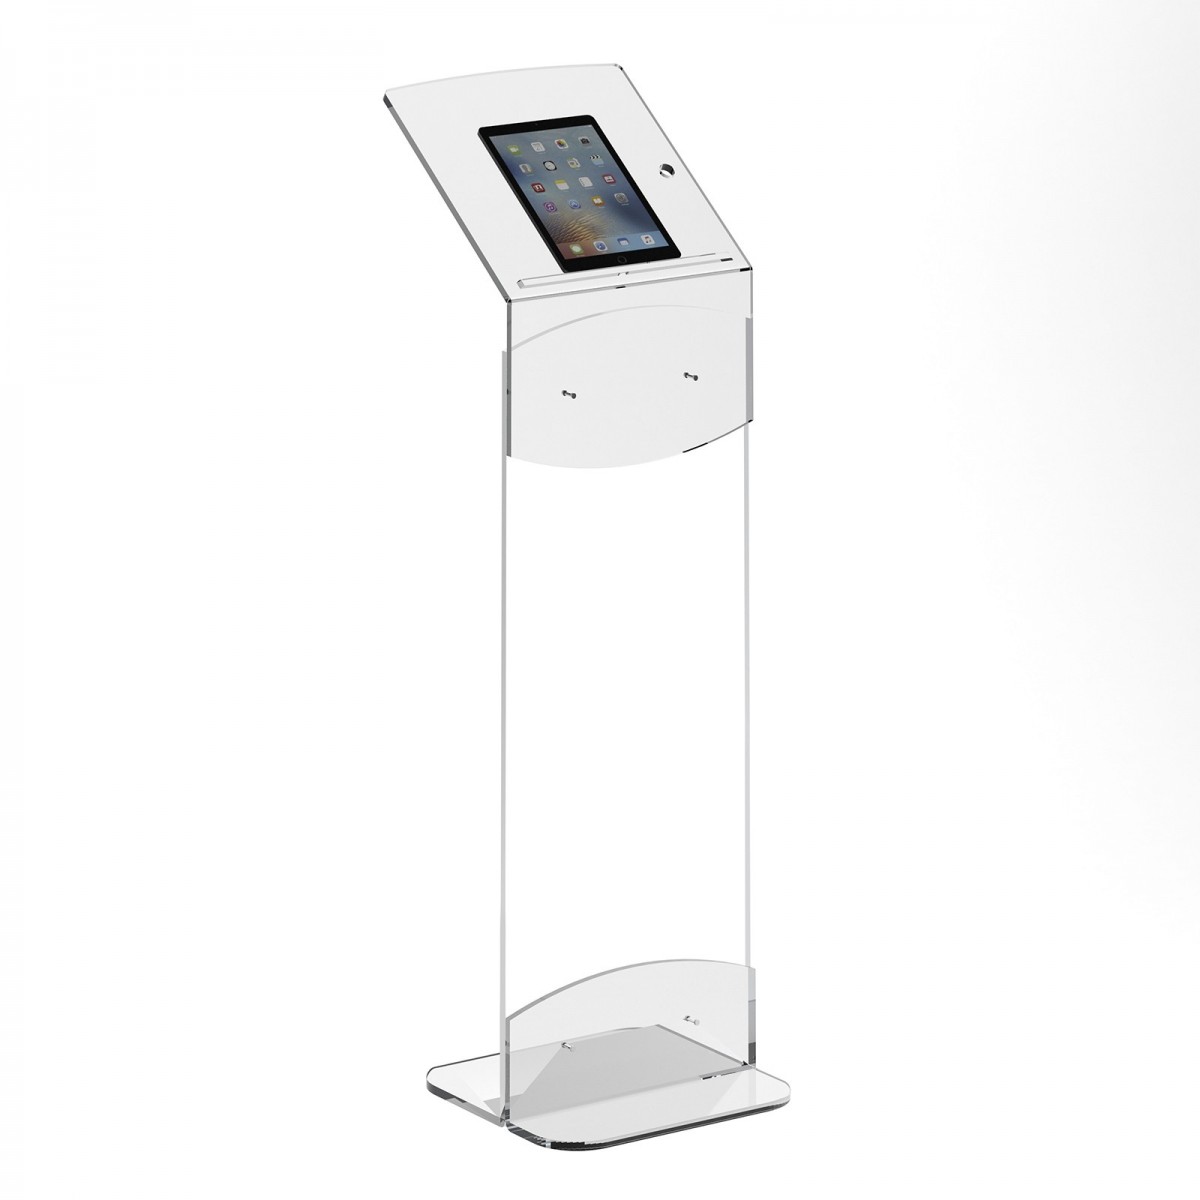 E-663 - Supporto da terra per Tablet, ipad, smartbook, netbook realizzato in plexiglass trasparente